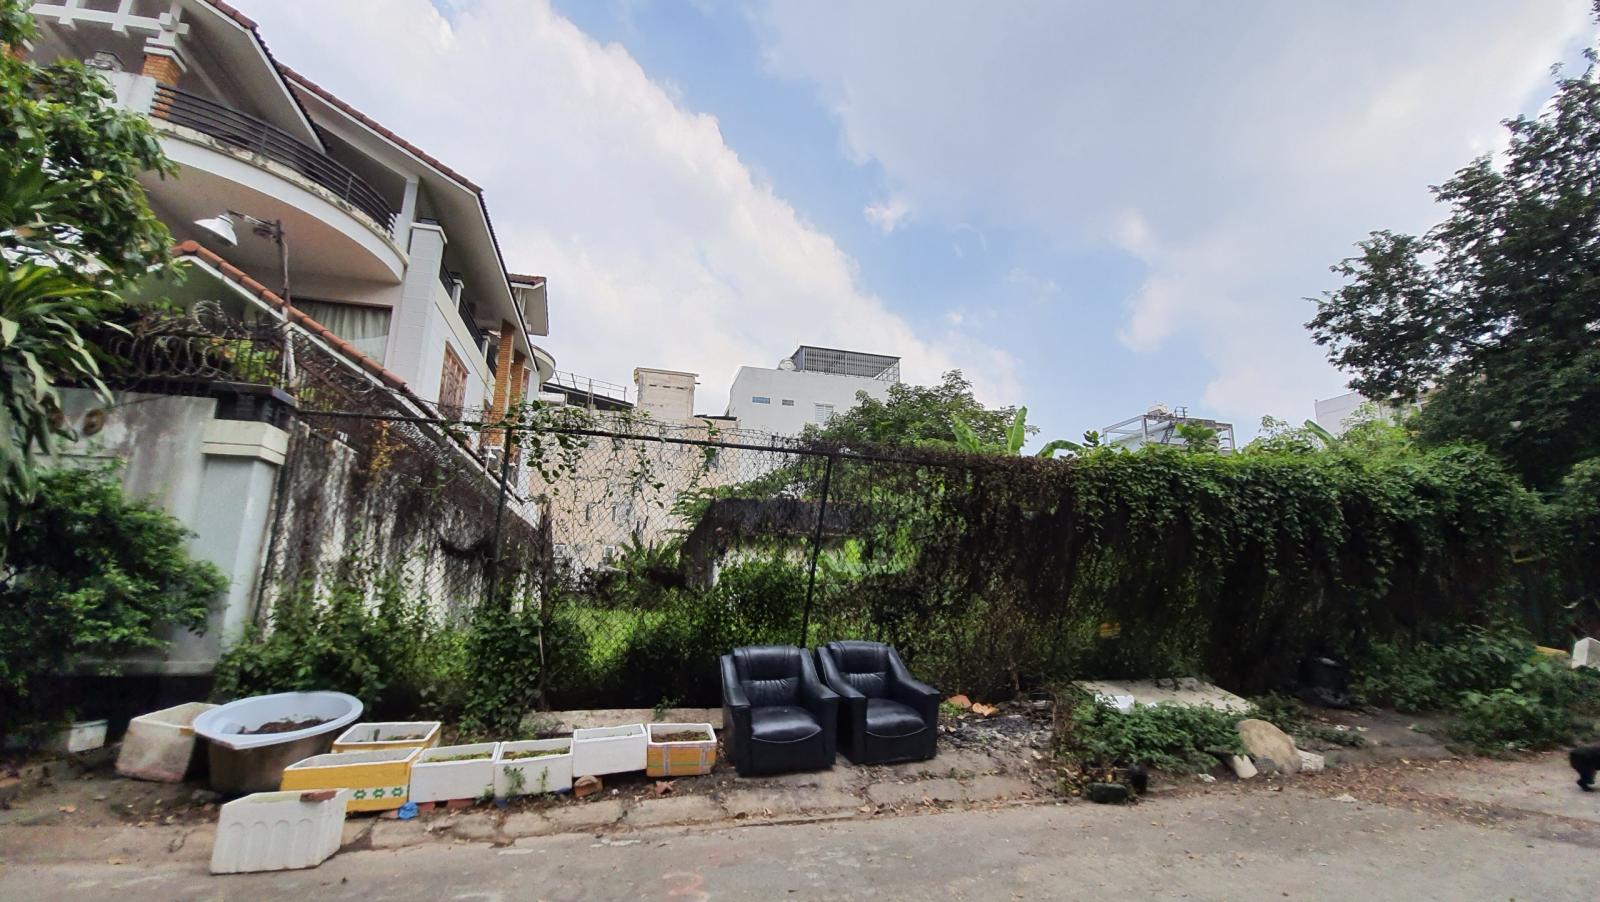 Bán đất biệt thự compound phường Bình An Q2, gần cầu Sài Gòn, 10x30, 105tr/m2, sổ đỏ. LH: 0906997966